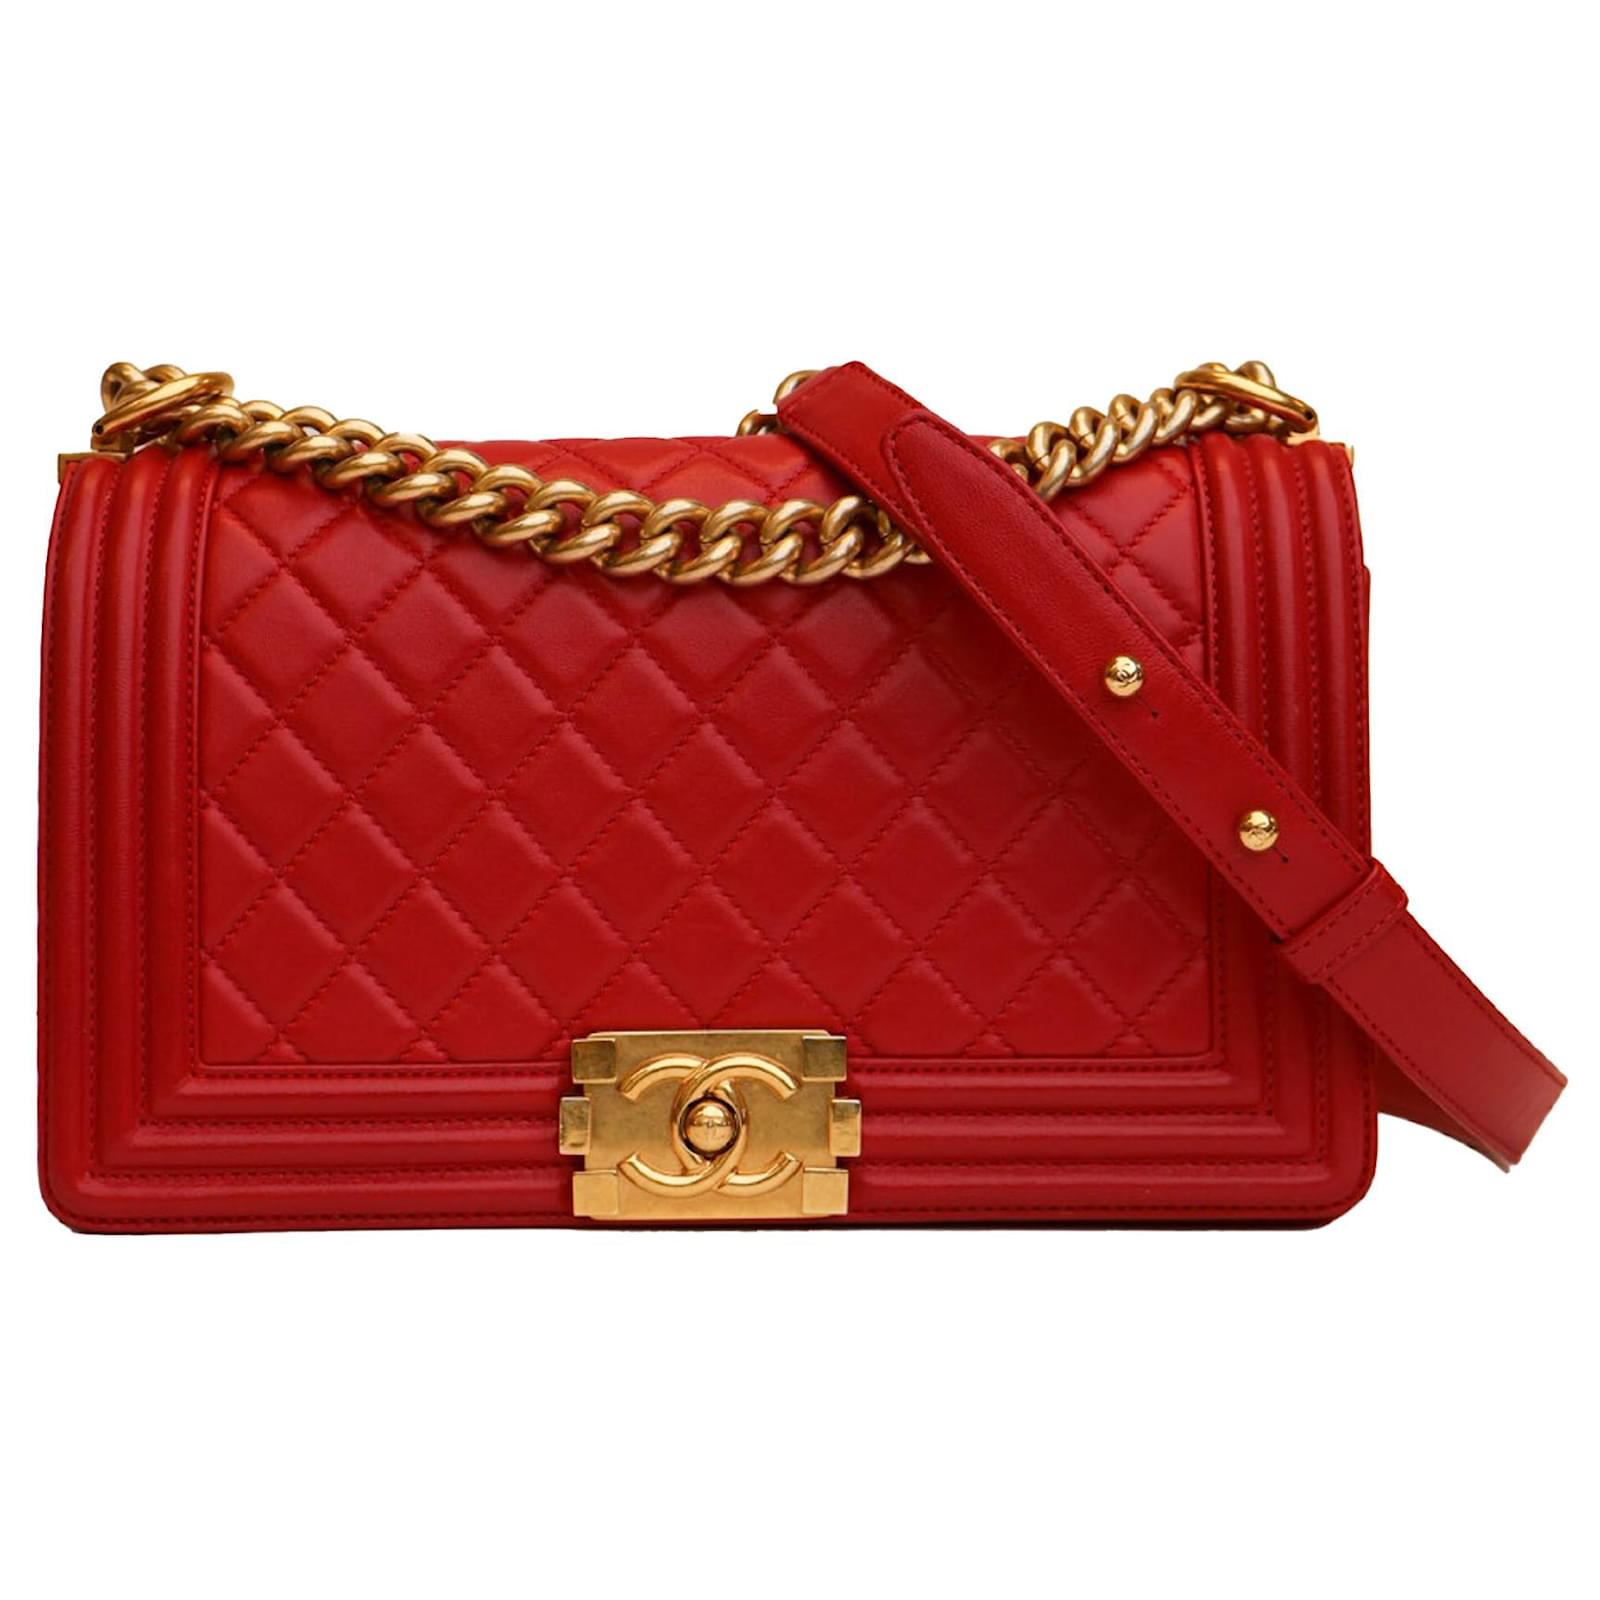 Chanel Red Medium Boy Flap Bag Chanel